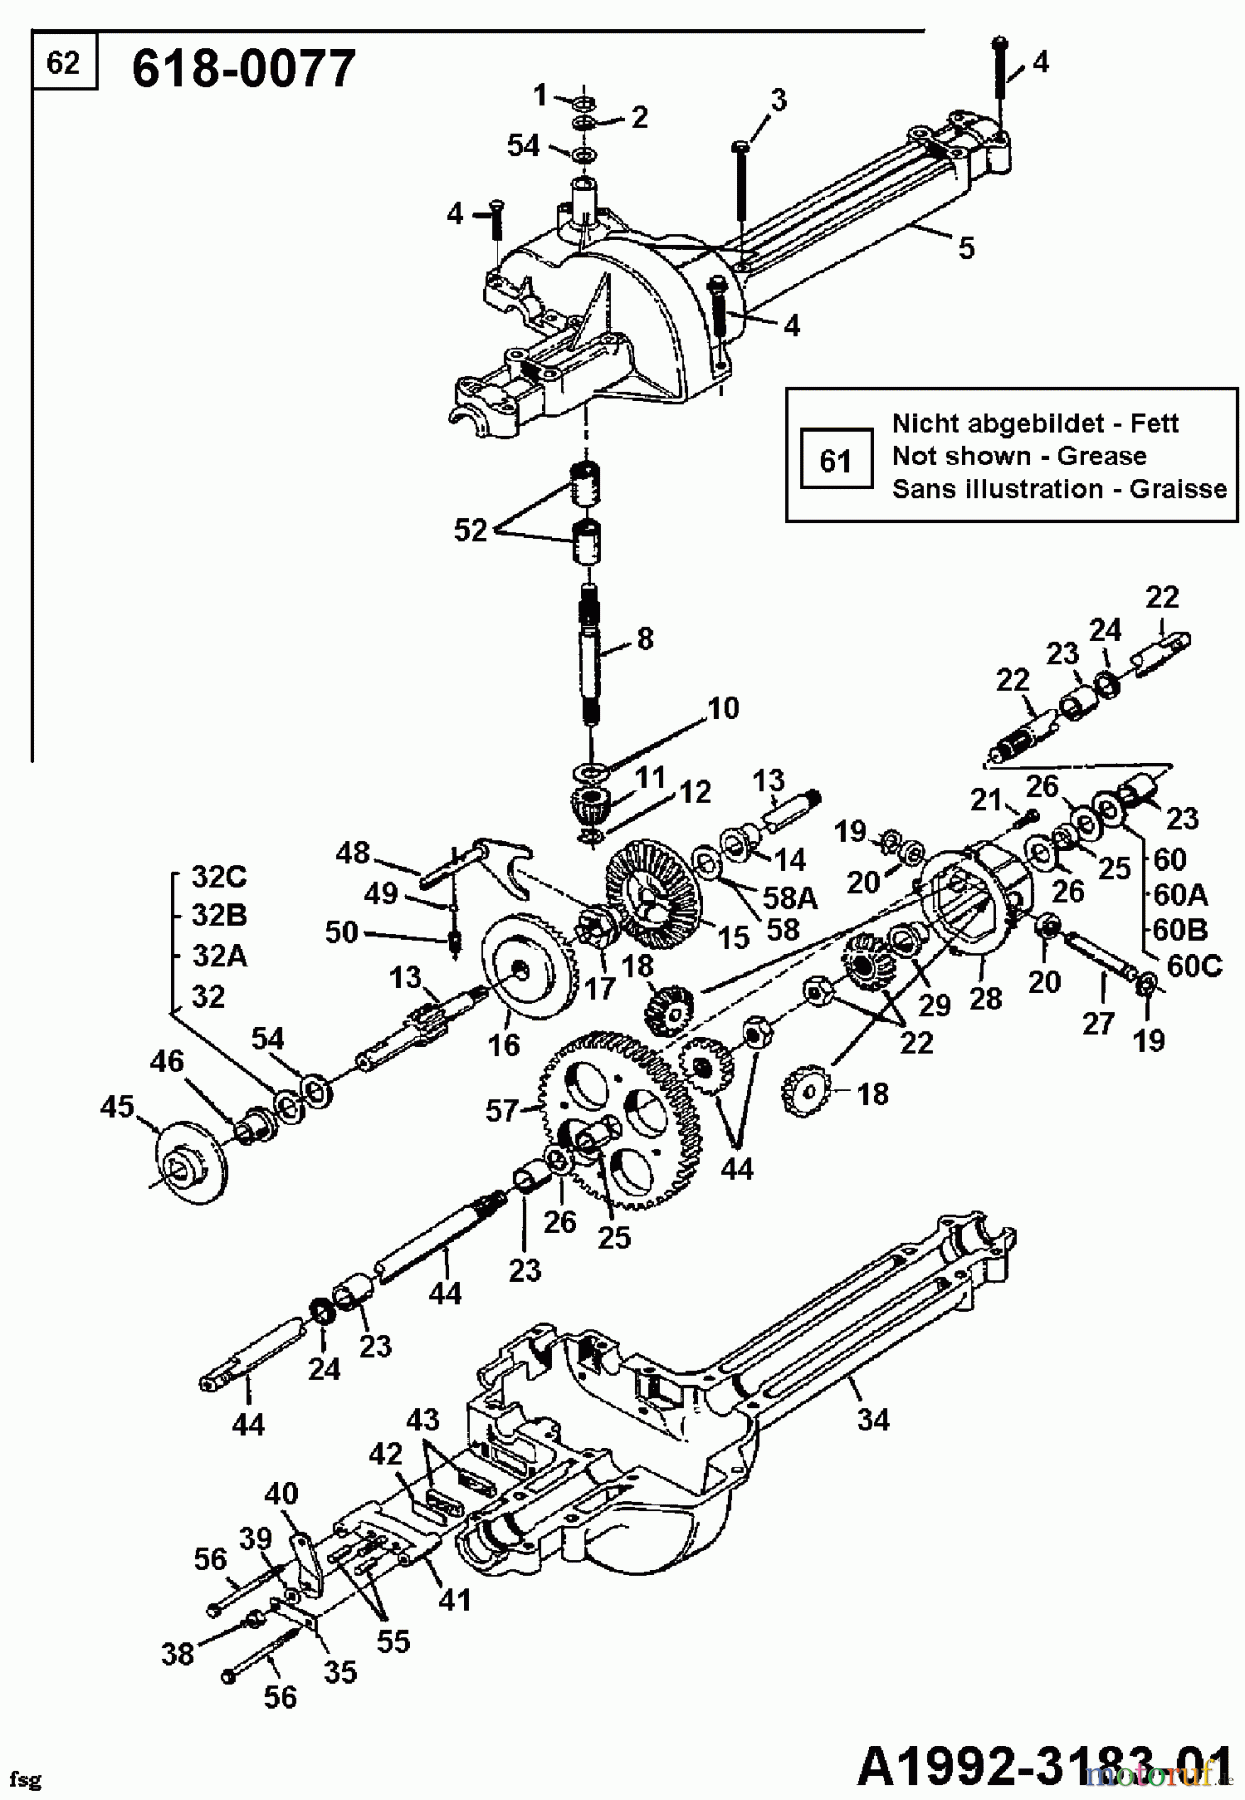  Mastercut Rasentraktoren 12/91 133I470E657  (1993) Getriebe 618-0077